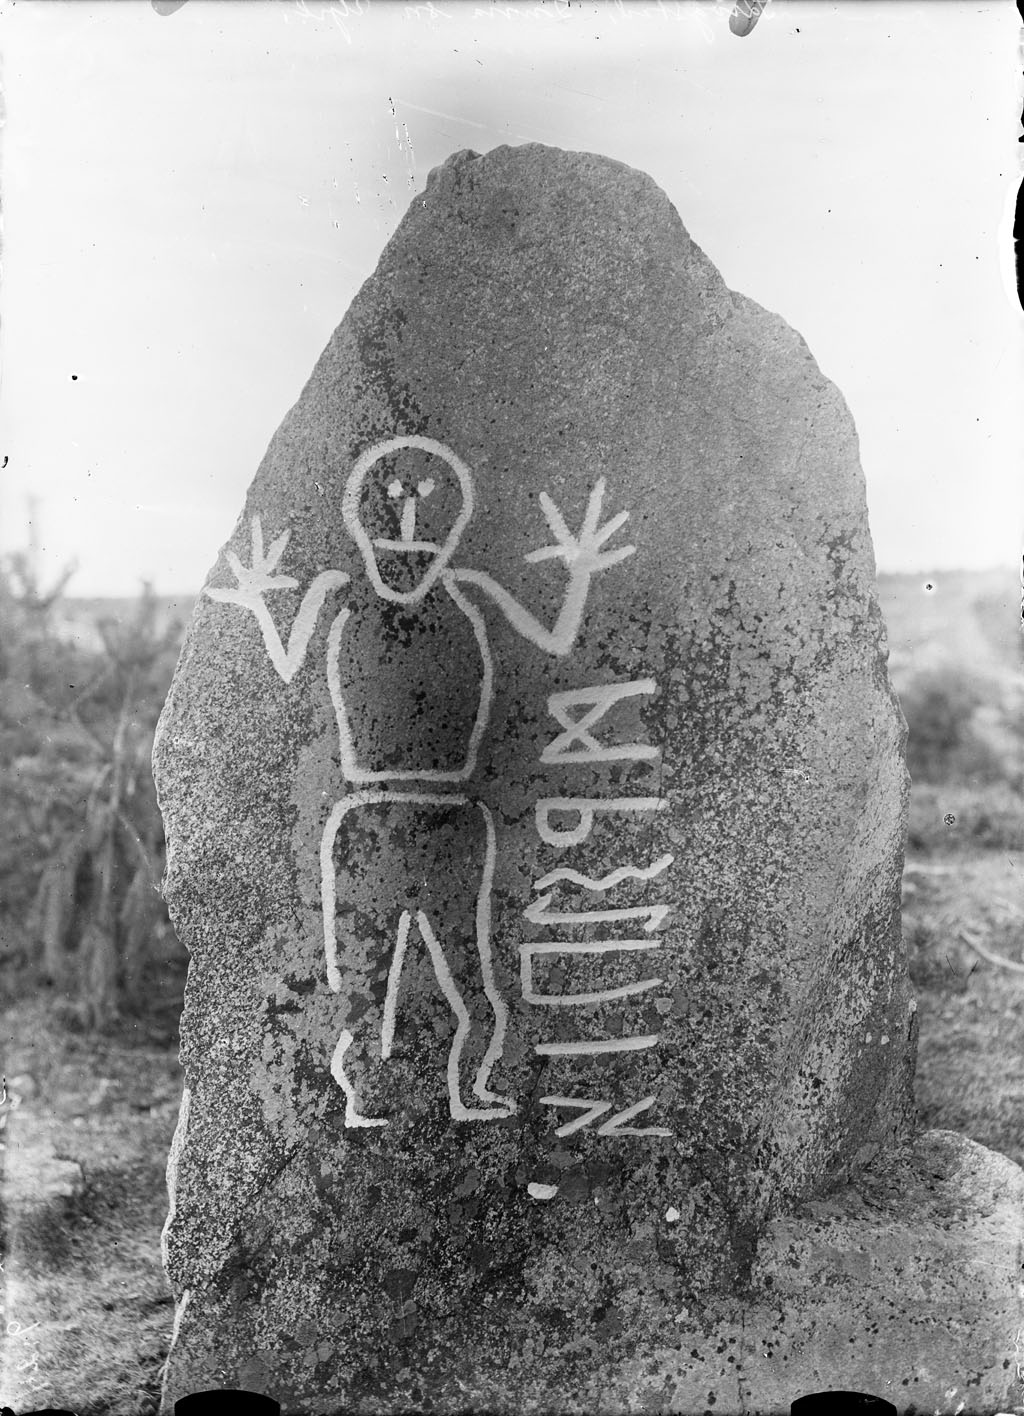 rune-stone-krogsta-uppland-sweden_3931686780_o.jpg